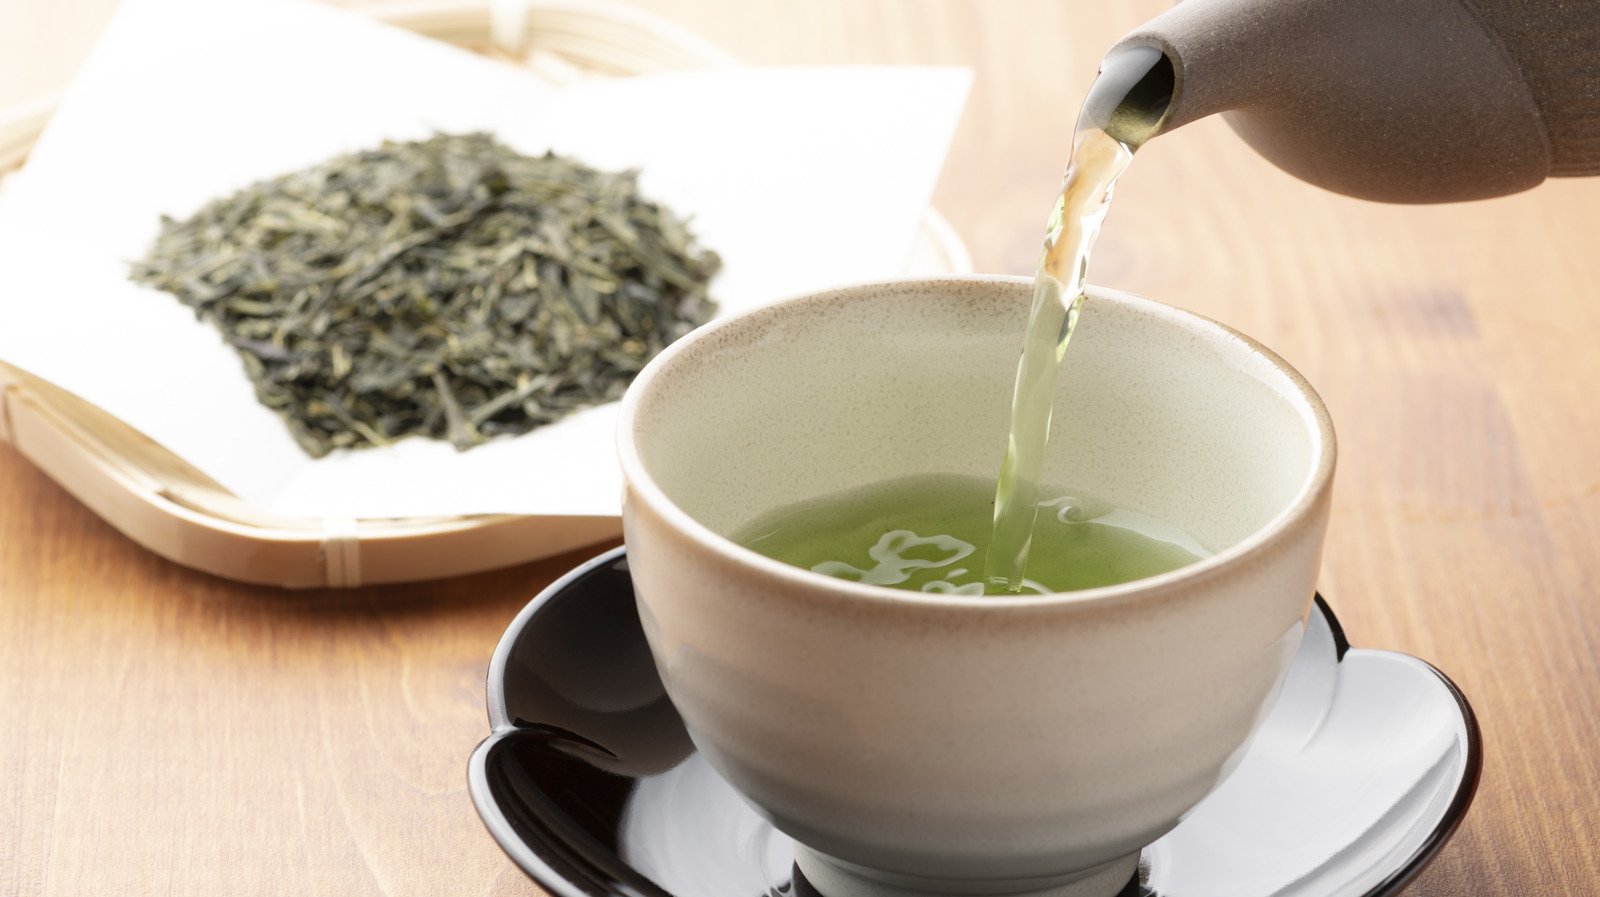 15 Best Green Tea Brands Ranked